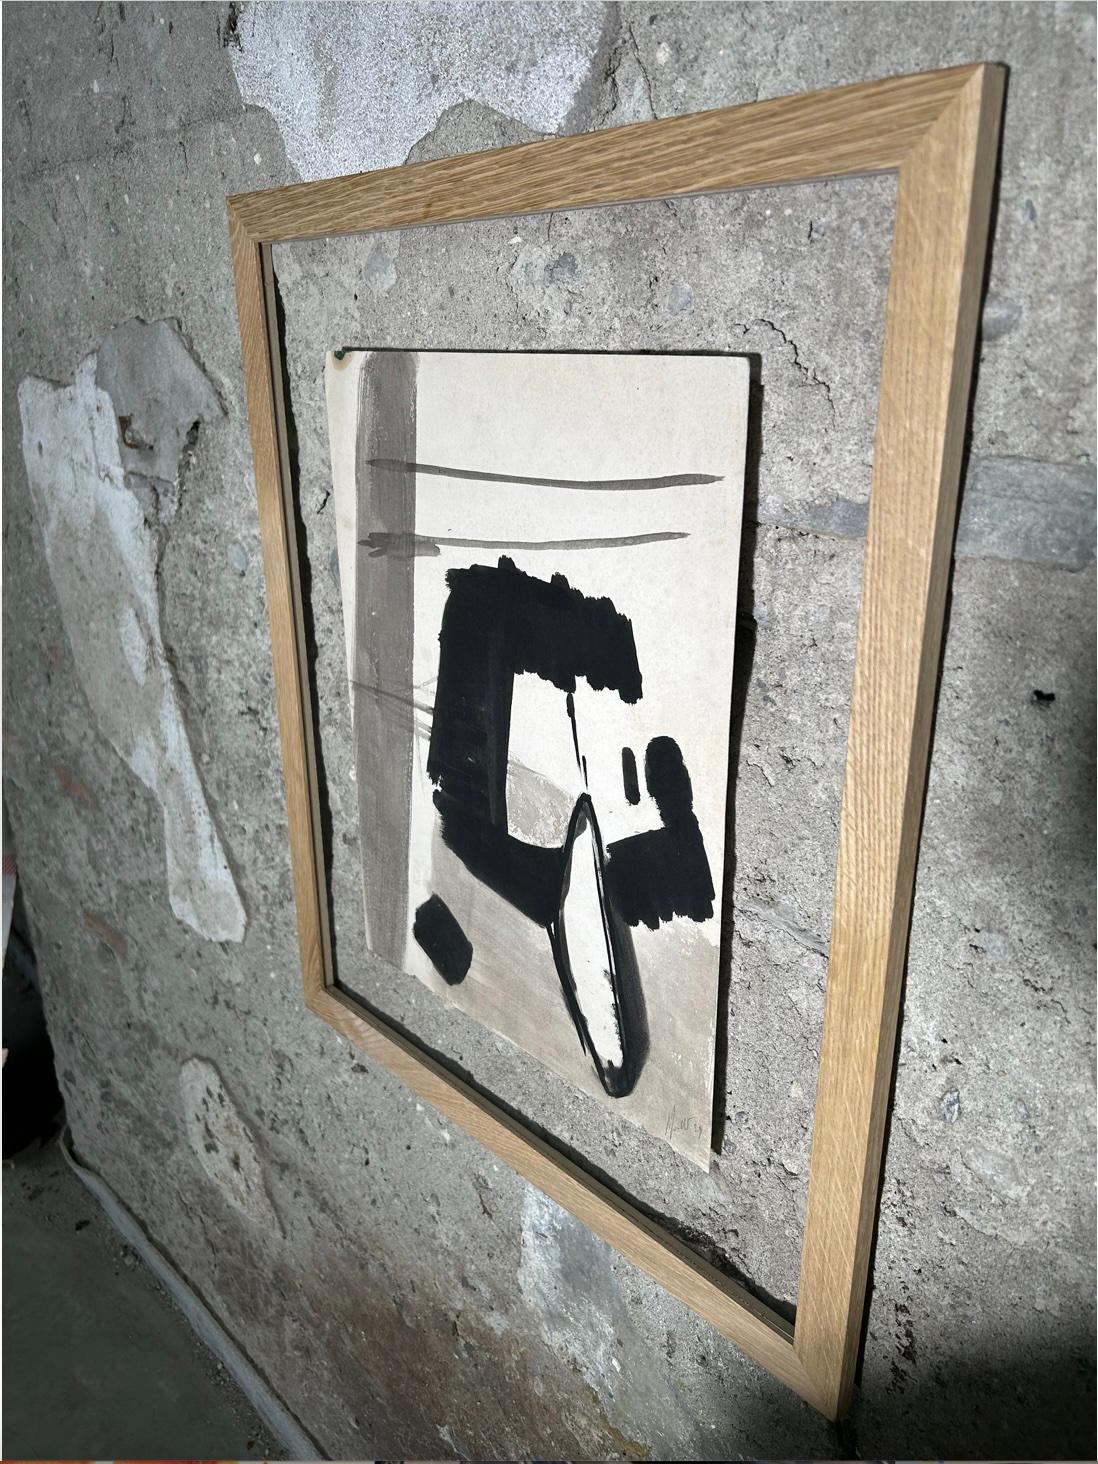 Peinture sur toile de Jean Miotte de 1959
Composition abstraite à l'encre de Chine sur toile sans châssis (envoyée roulée).
Daté et signé par l'artiste.

Sans cadre : 42,5 x 33 x 1,5 cm